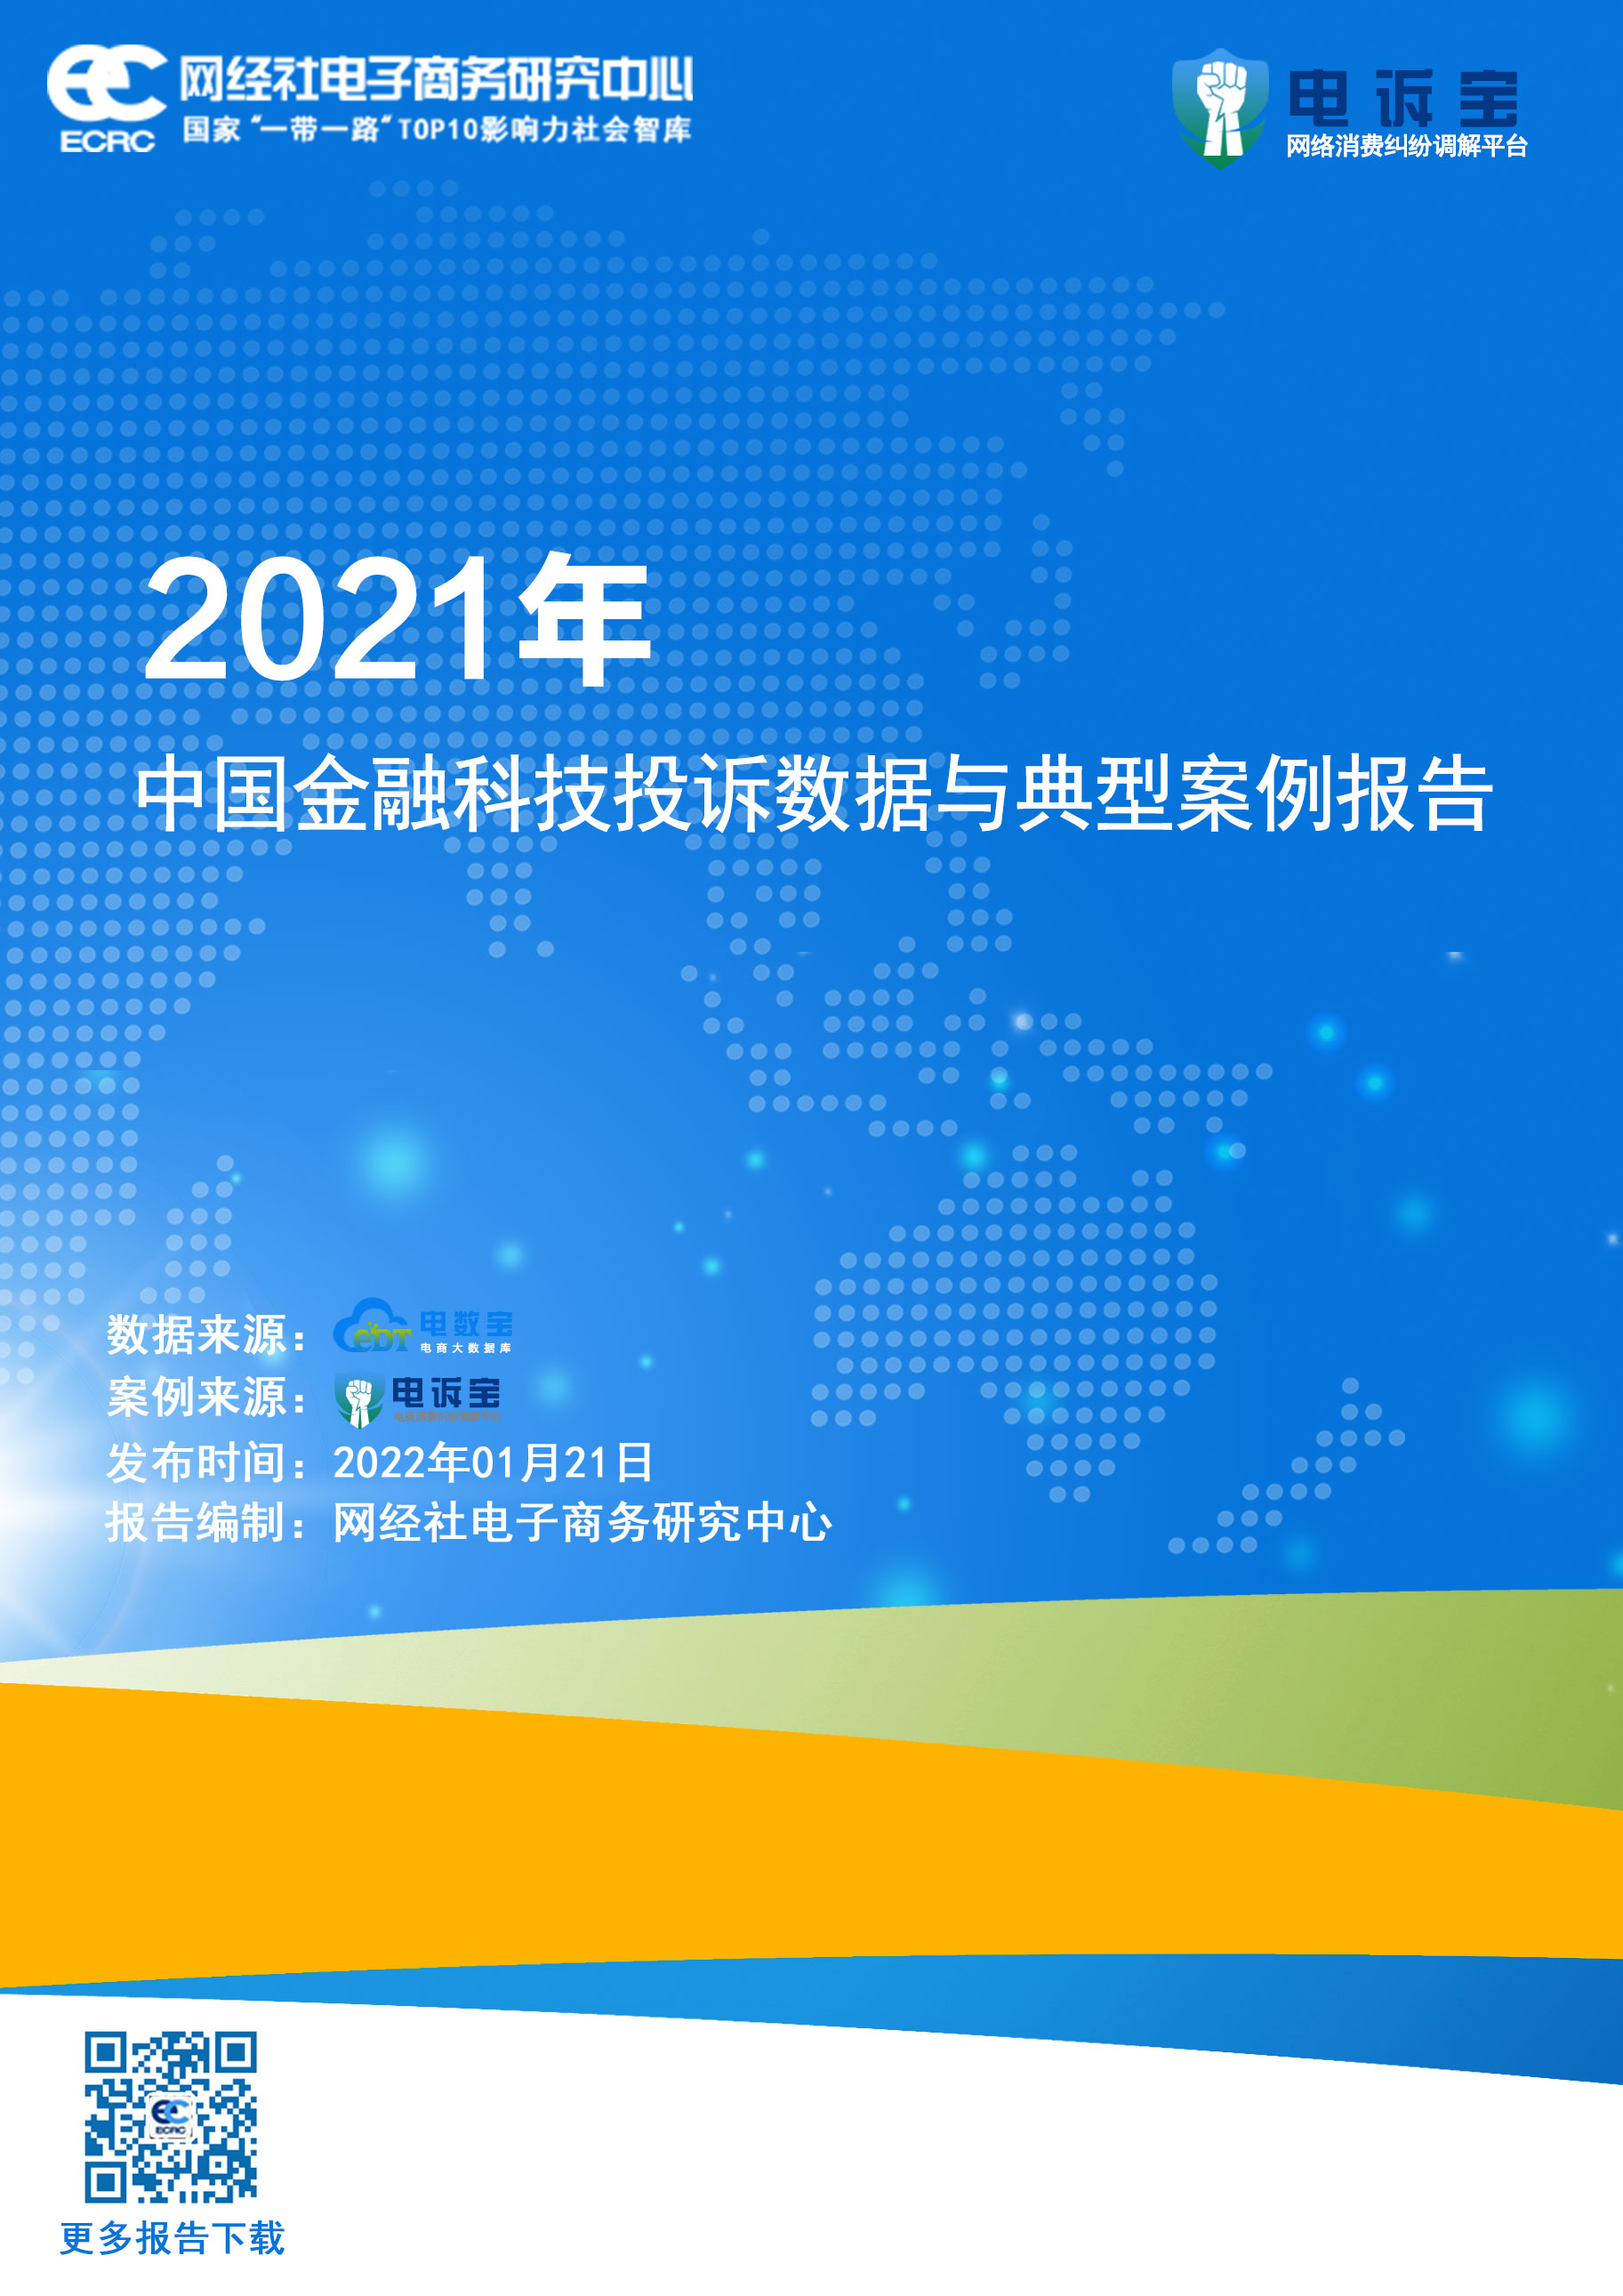 2021年度中国金融科技投诉数据与典型案例报告(1).jpg